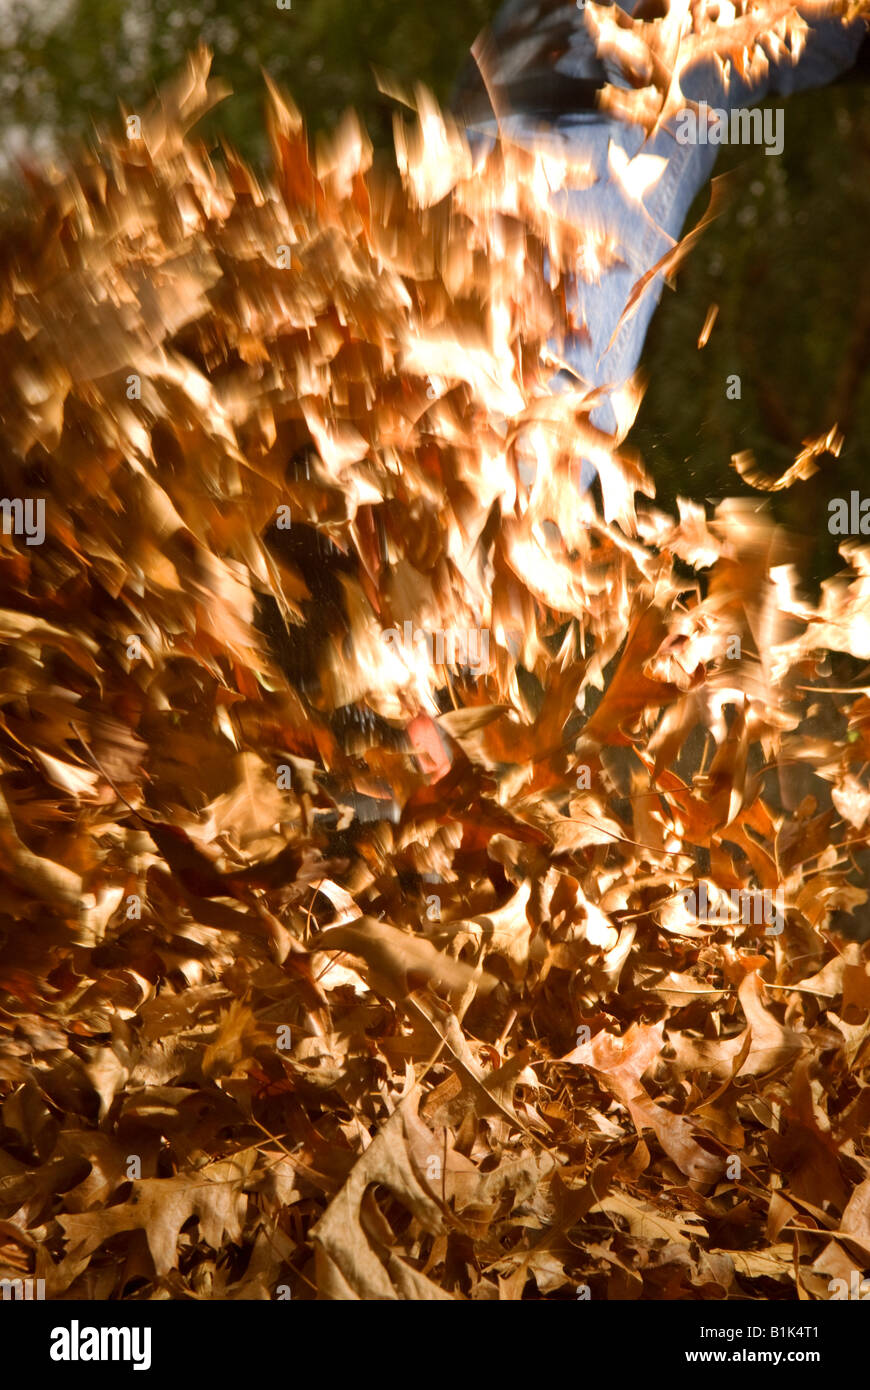 Kicking autumn leaves Stock Photo